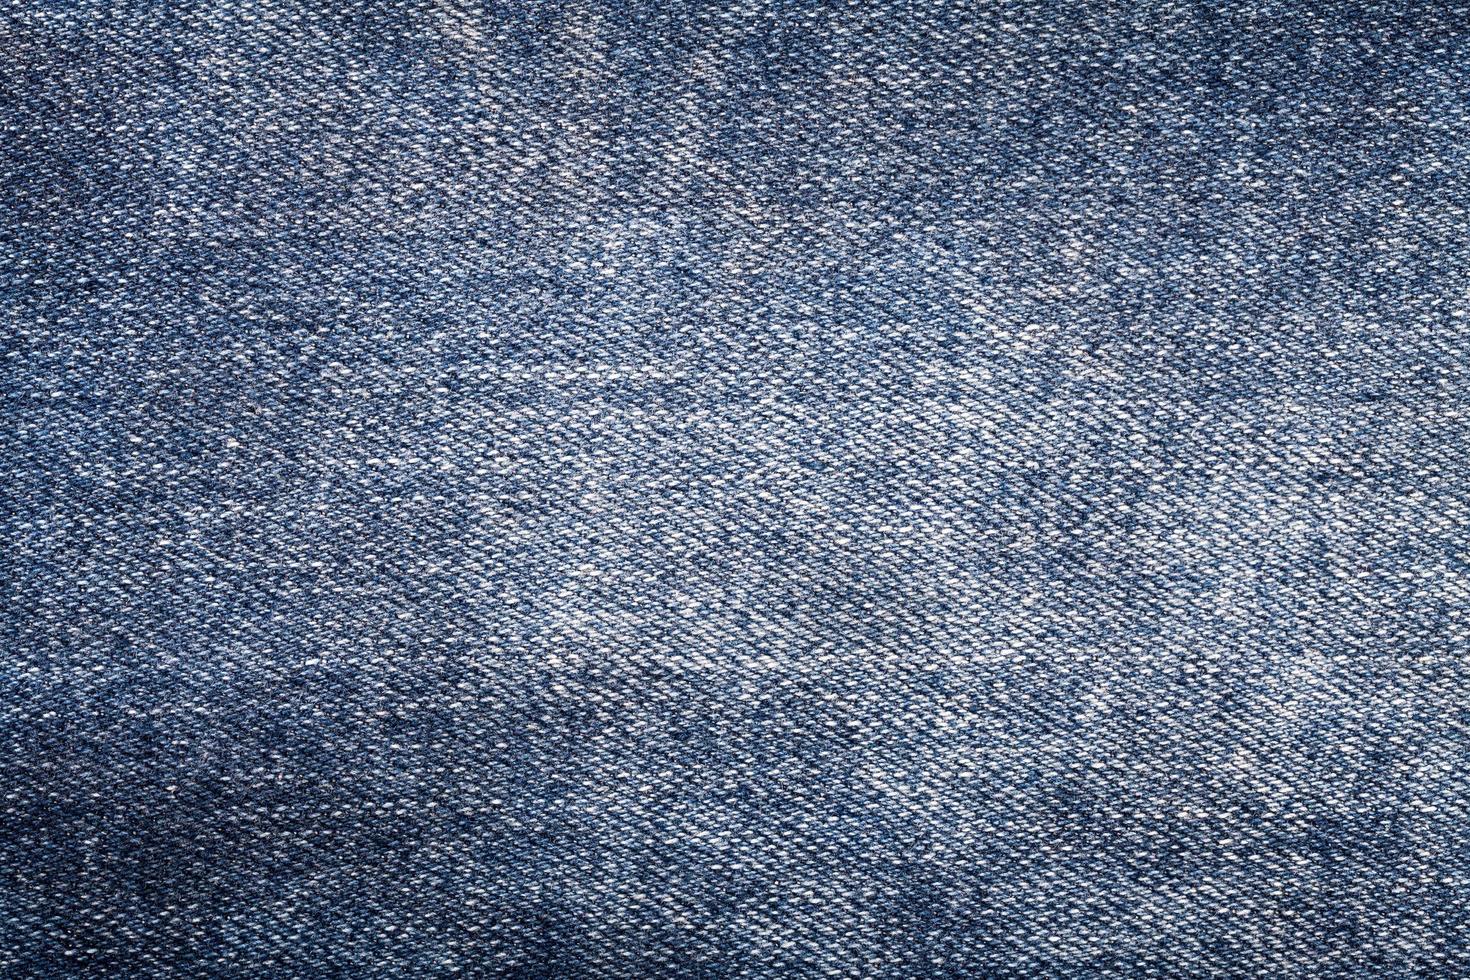 texture de fond de jeans bleus photo